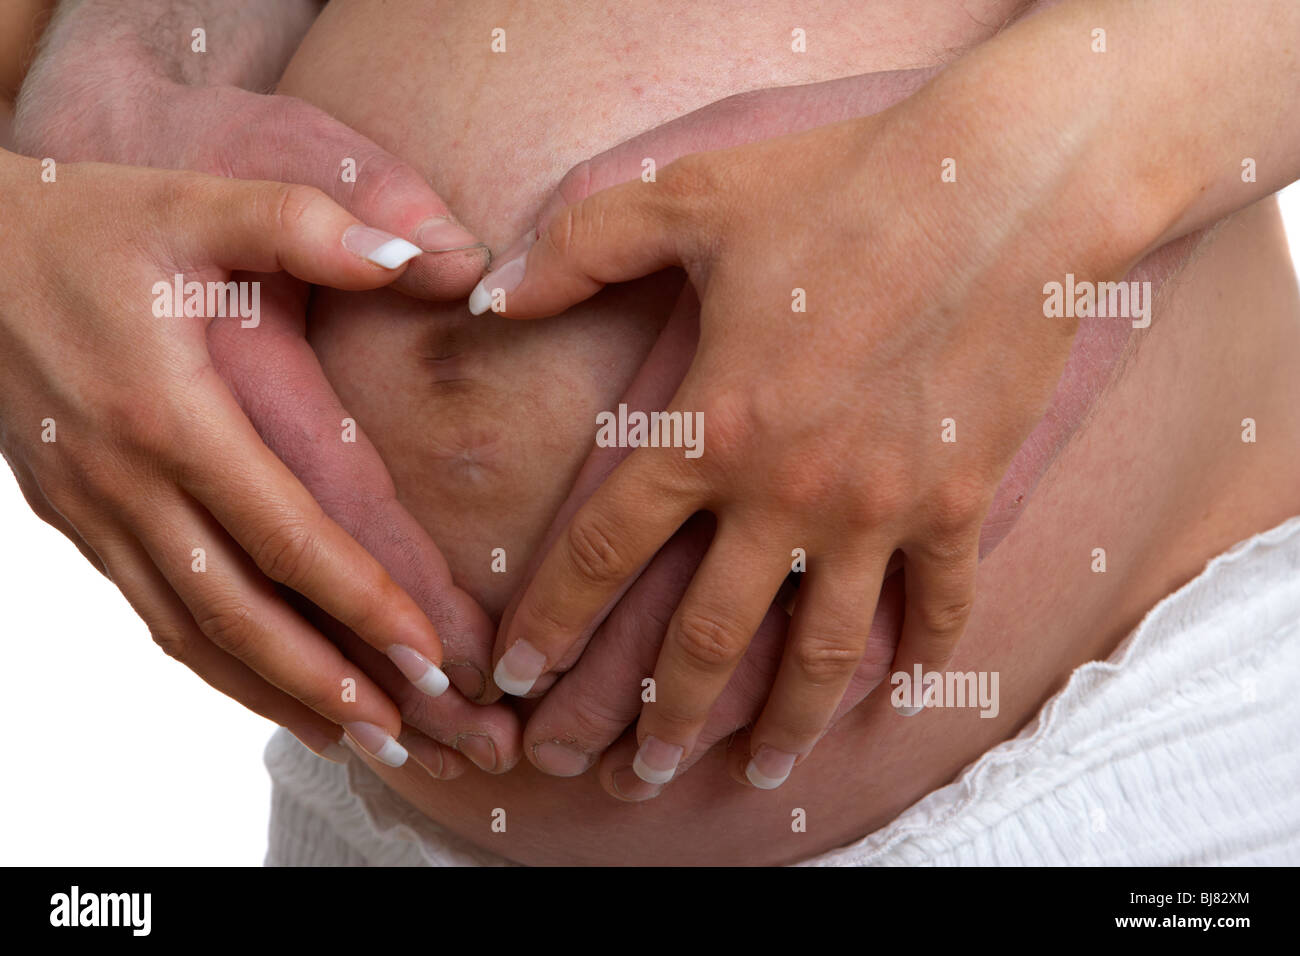 8 mese di gravidanza 30 anno vecchia donna con 37 anni partner di sesso maschile tenendo le mani sul baby bump Foto Stock